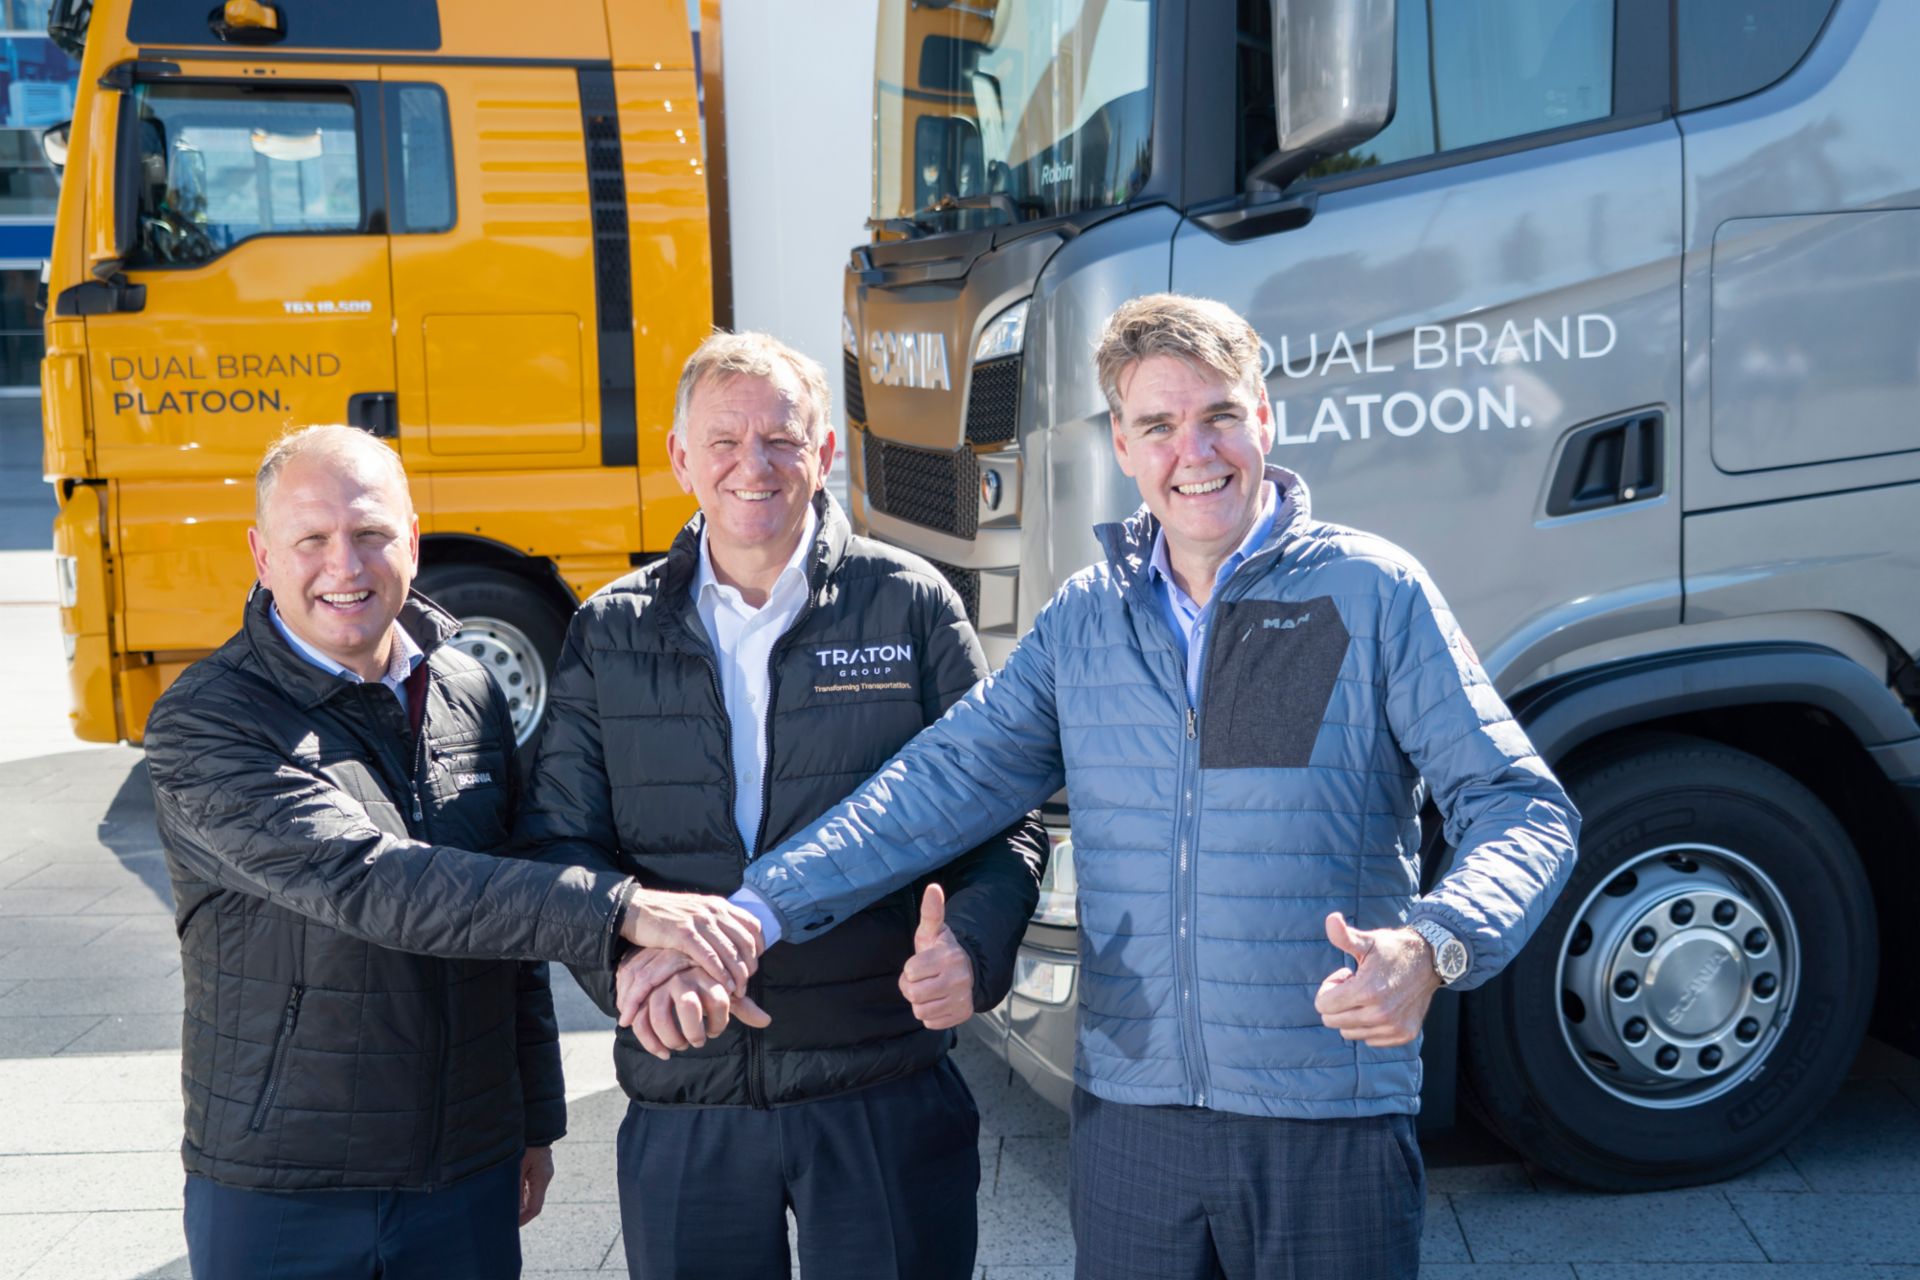 Henrik Henriksson, Andreas Renschler und Joachim Drees blicken lächelnd in die Kamera und geben sich die Hand.
                 